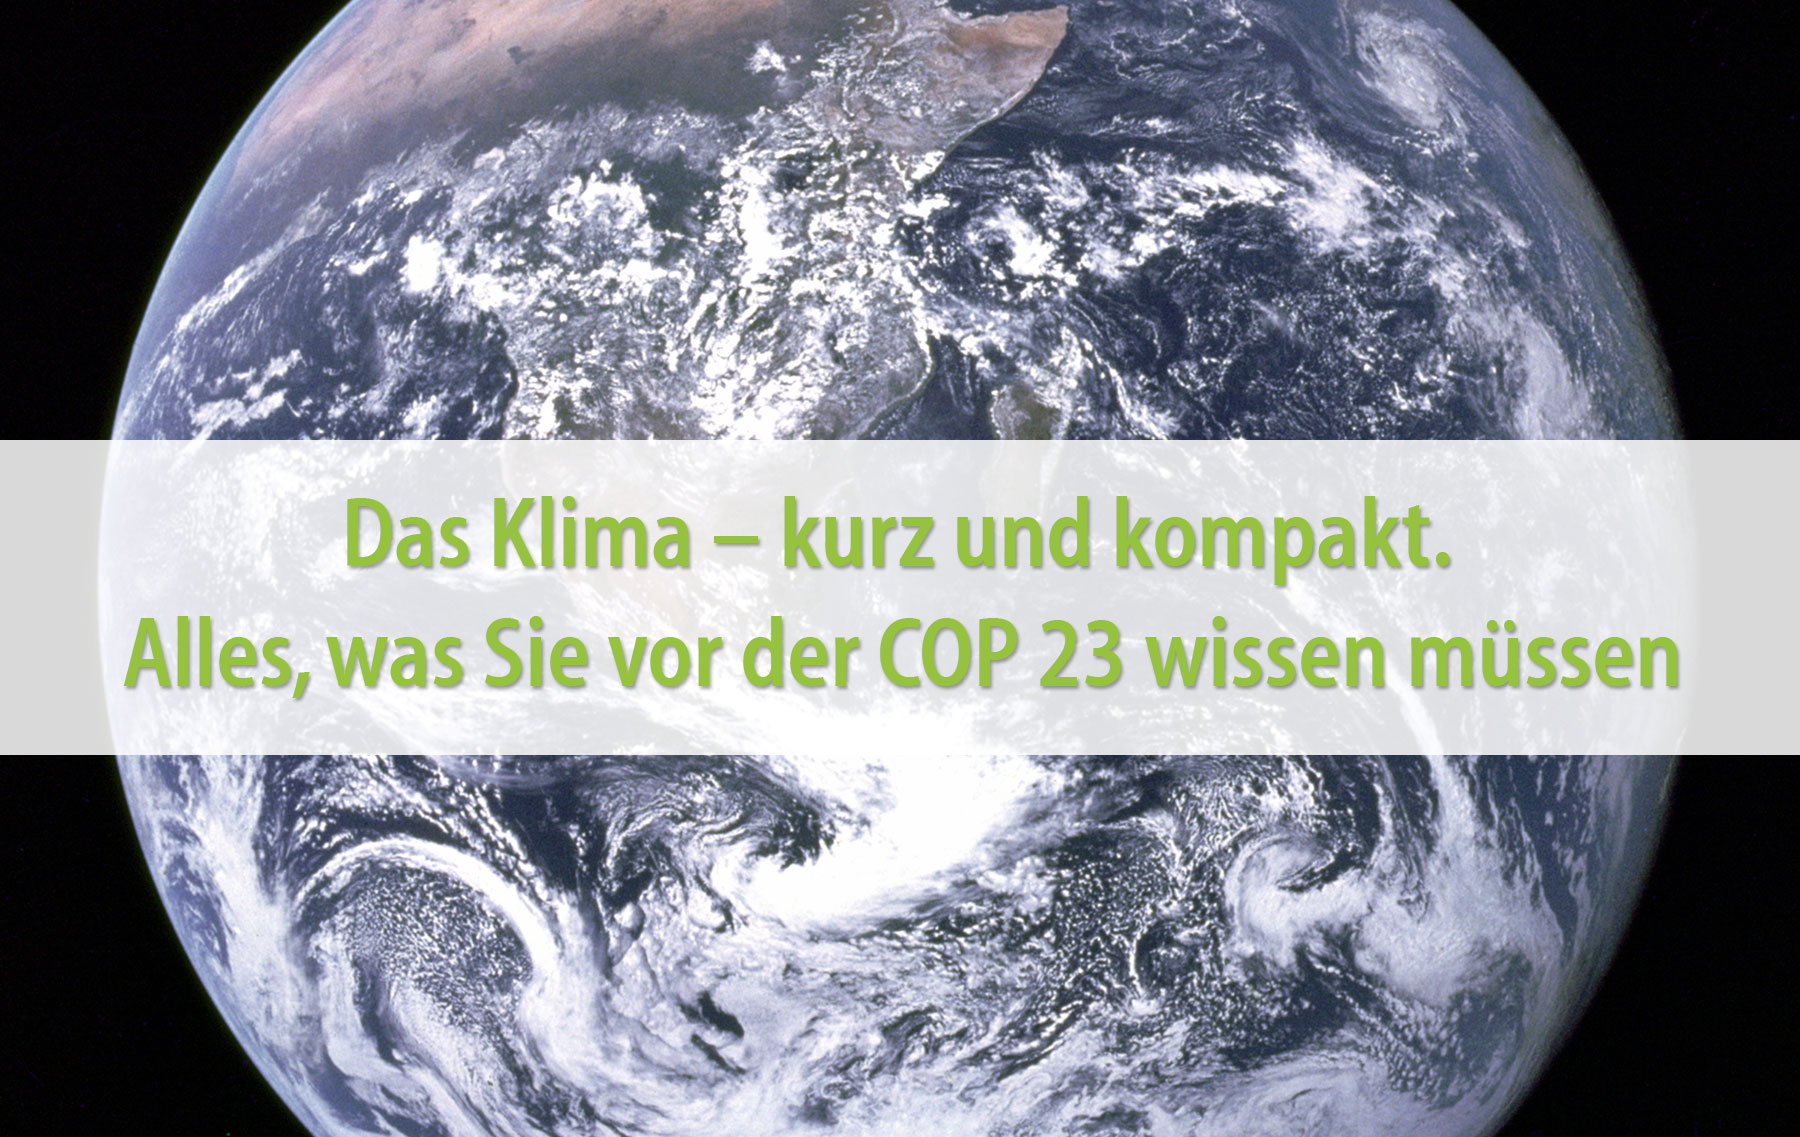 Das Klima – kurz und kompakt. Alles, was Sie vor der COP 23 wissen müssen